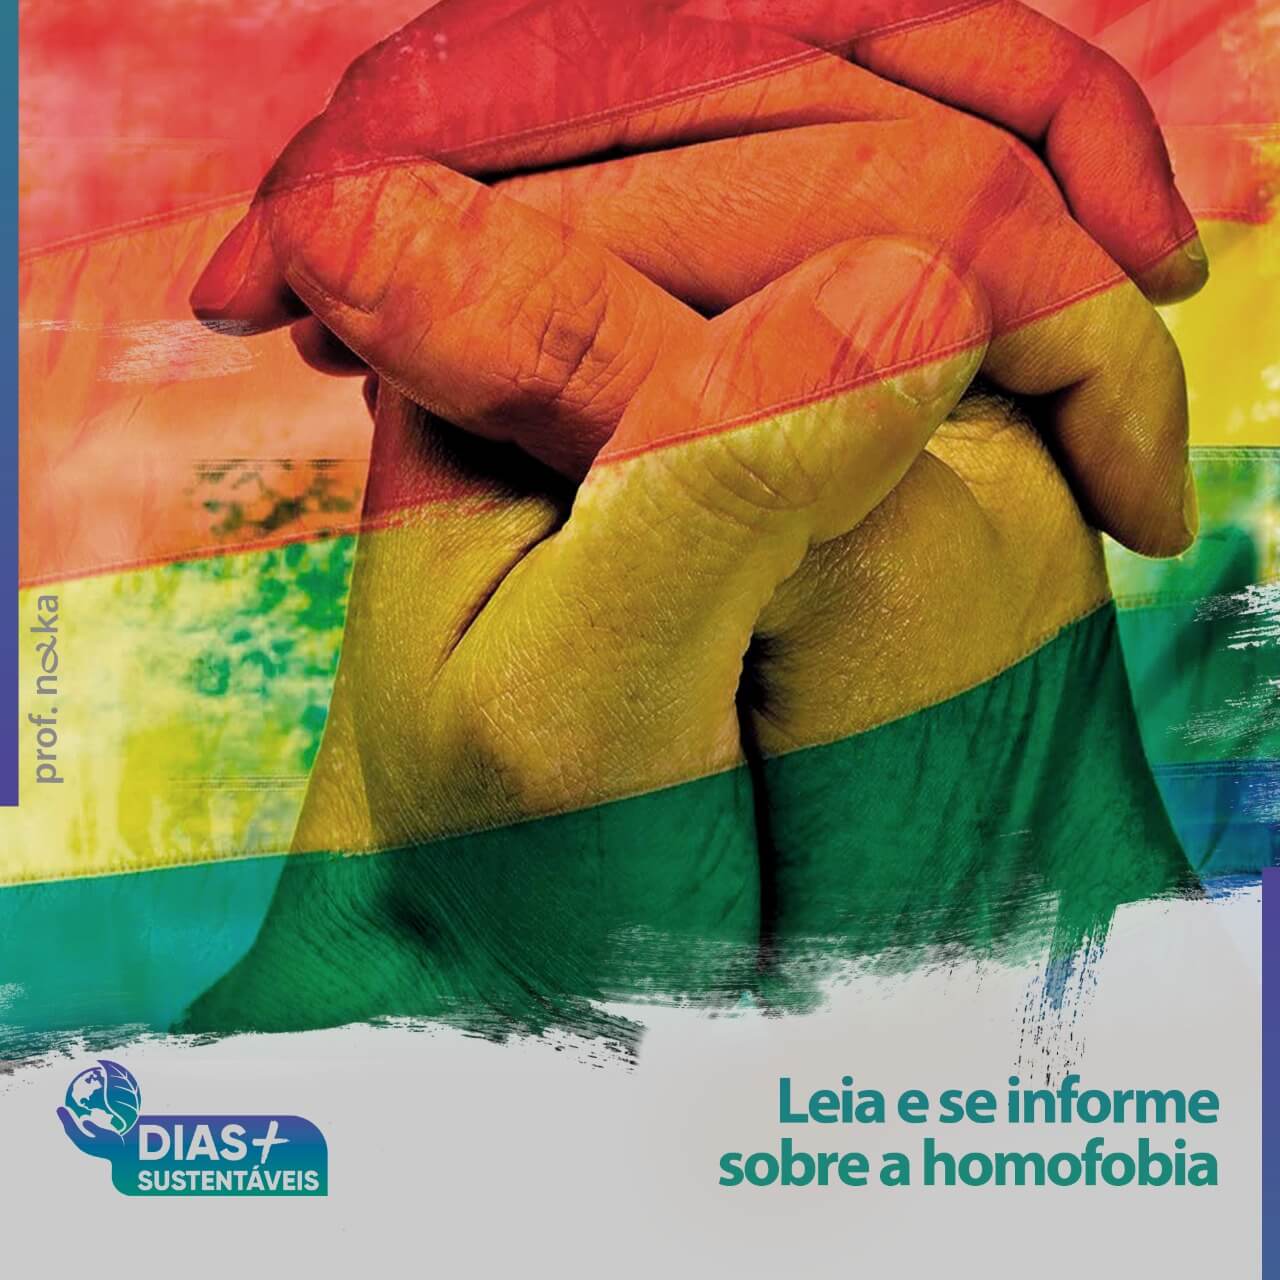 Leia e se informe sobre a homofobia